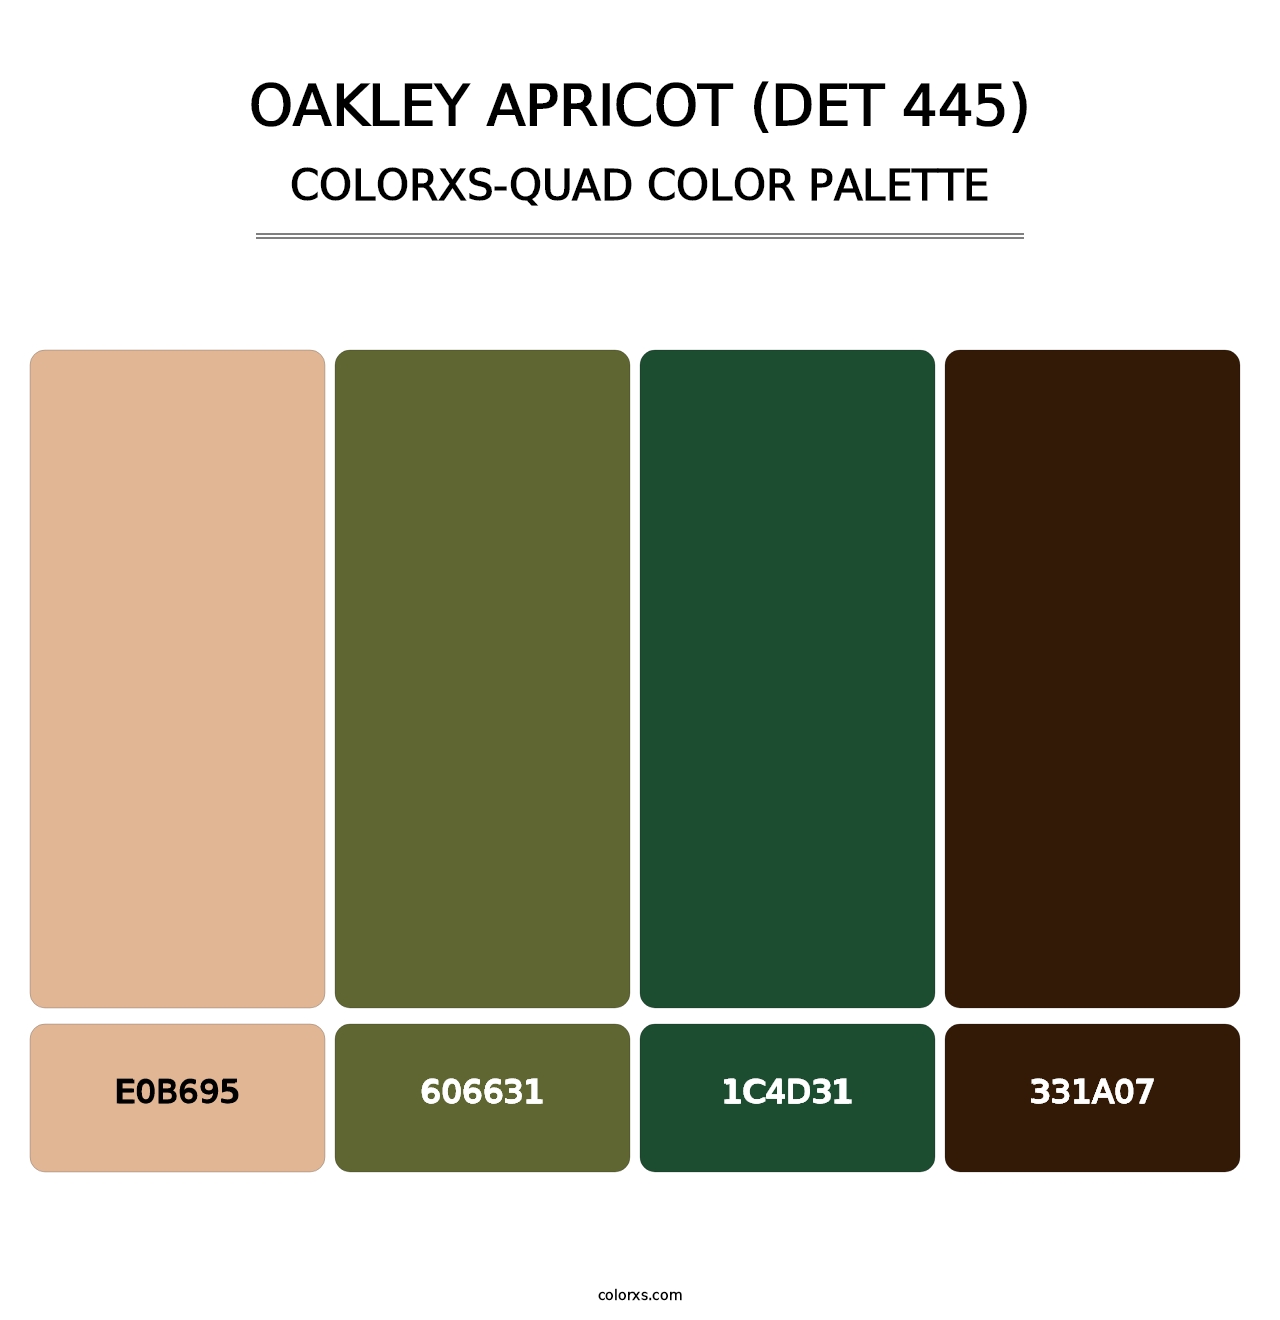 Oakley Apricot (DET 445) - Colorxs Quad Palette